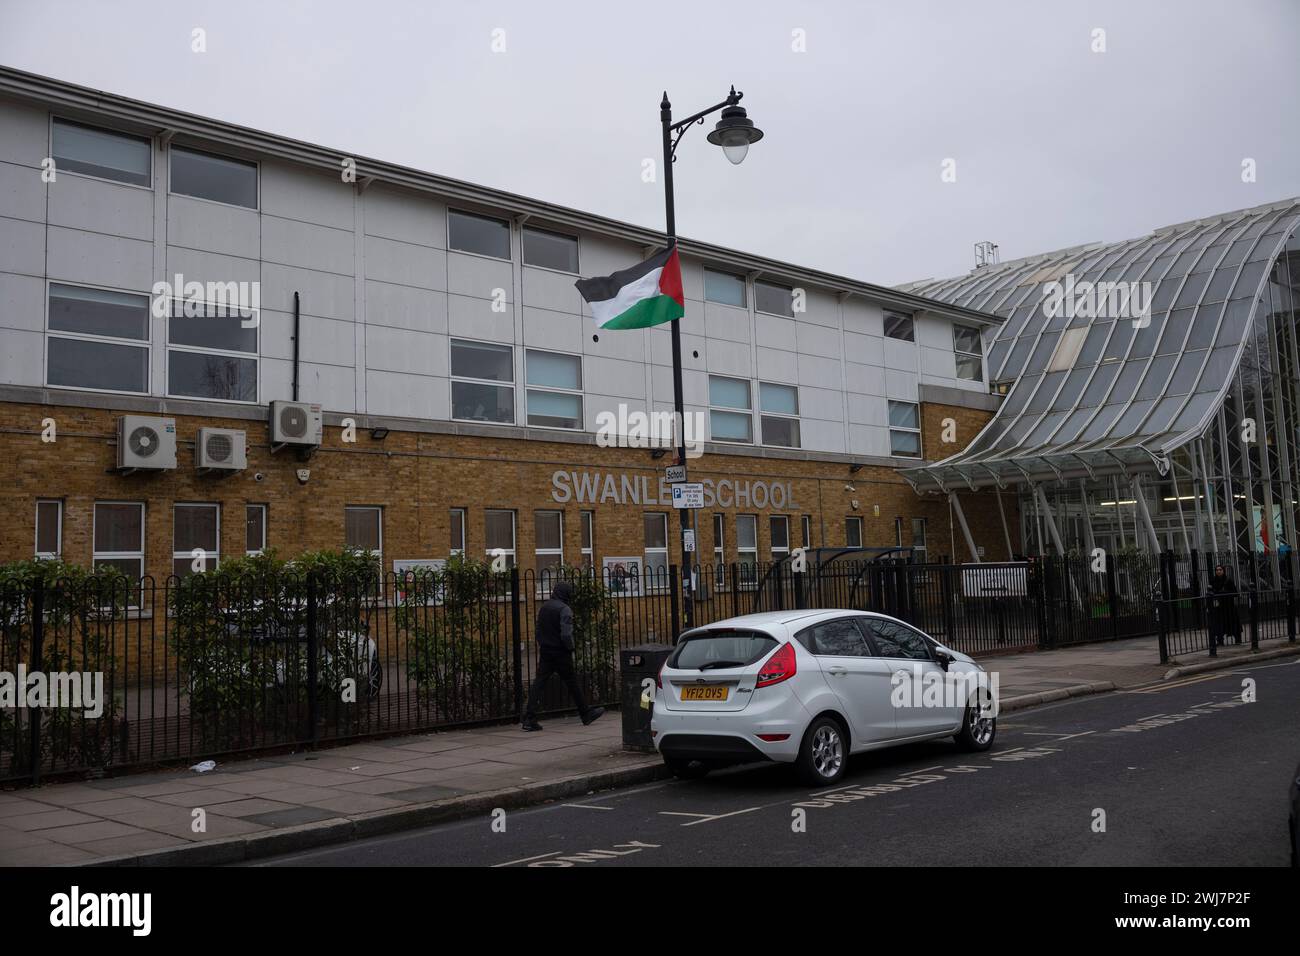 Swanlea Secondary School à Whitechapel, communauté juive de l’est de Londres en « état de peur » alors que les drapeaux palestiniens flottent devant les écoles, Tower Hamlets, Royaume-Uni Banque D'Images